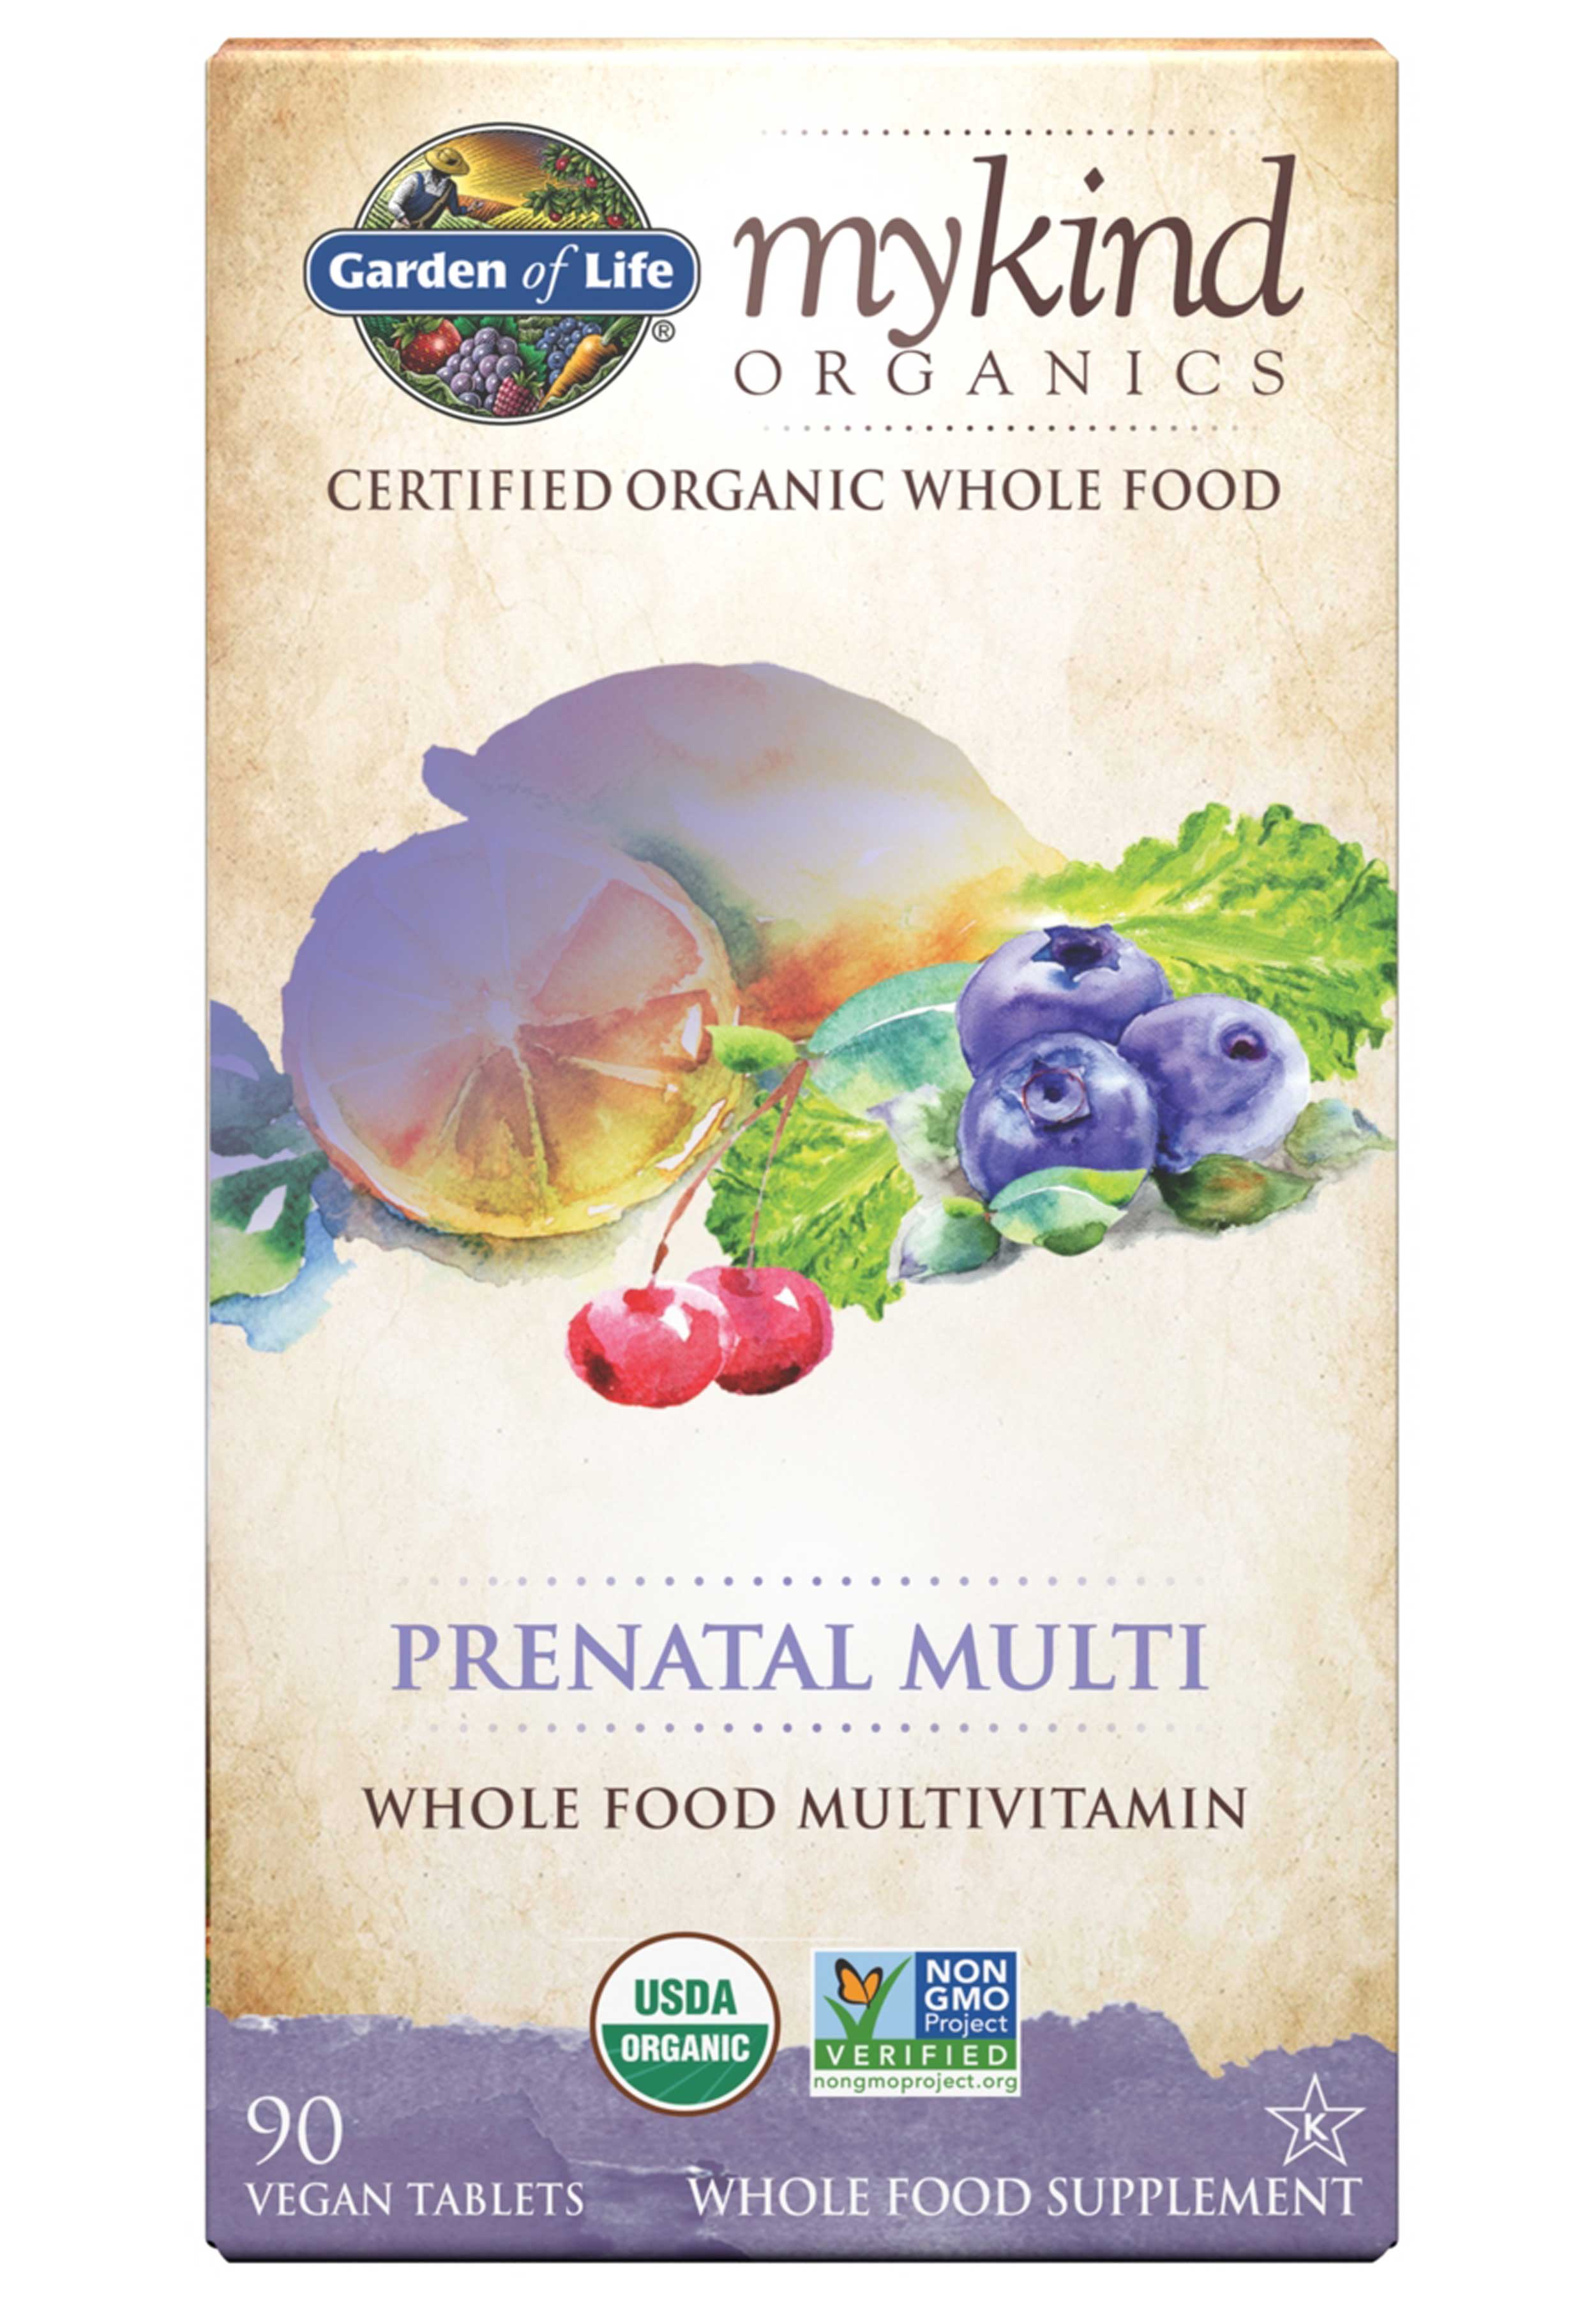 Garden of Life mykind Organics Prenatal Multivitamin